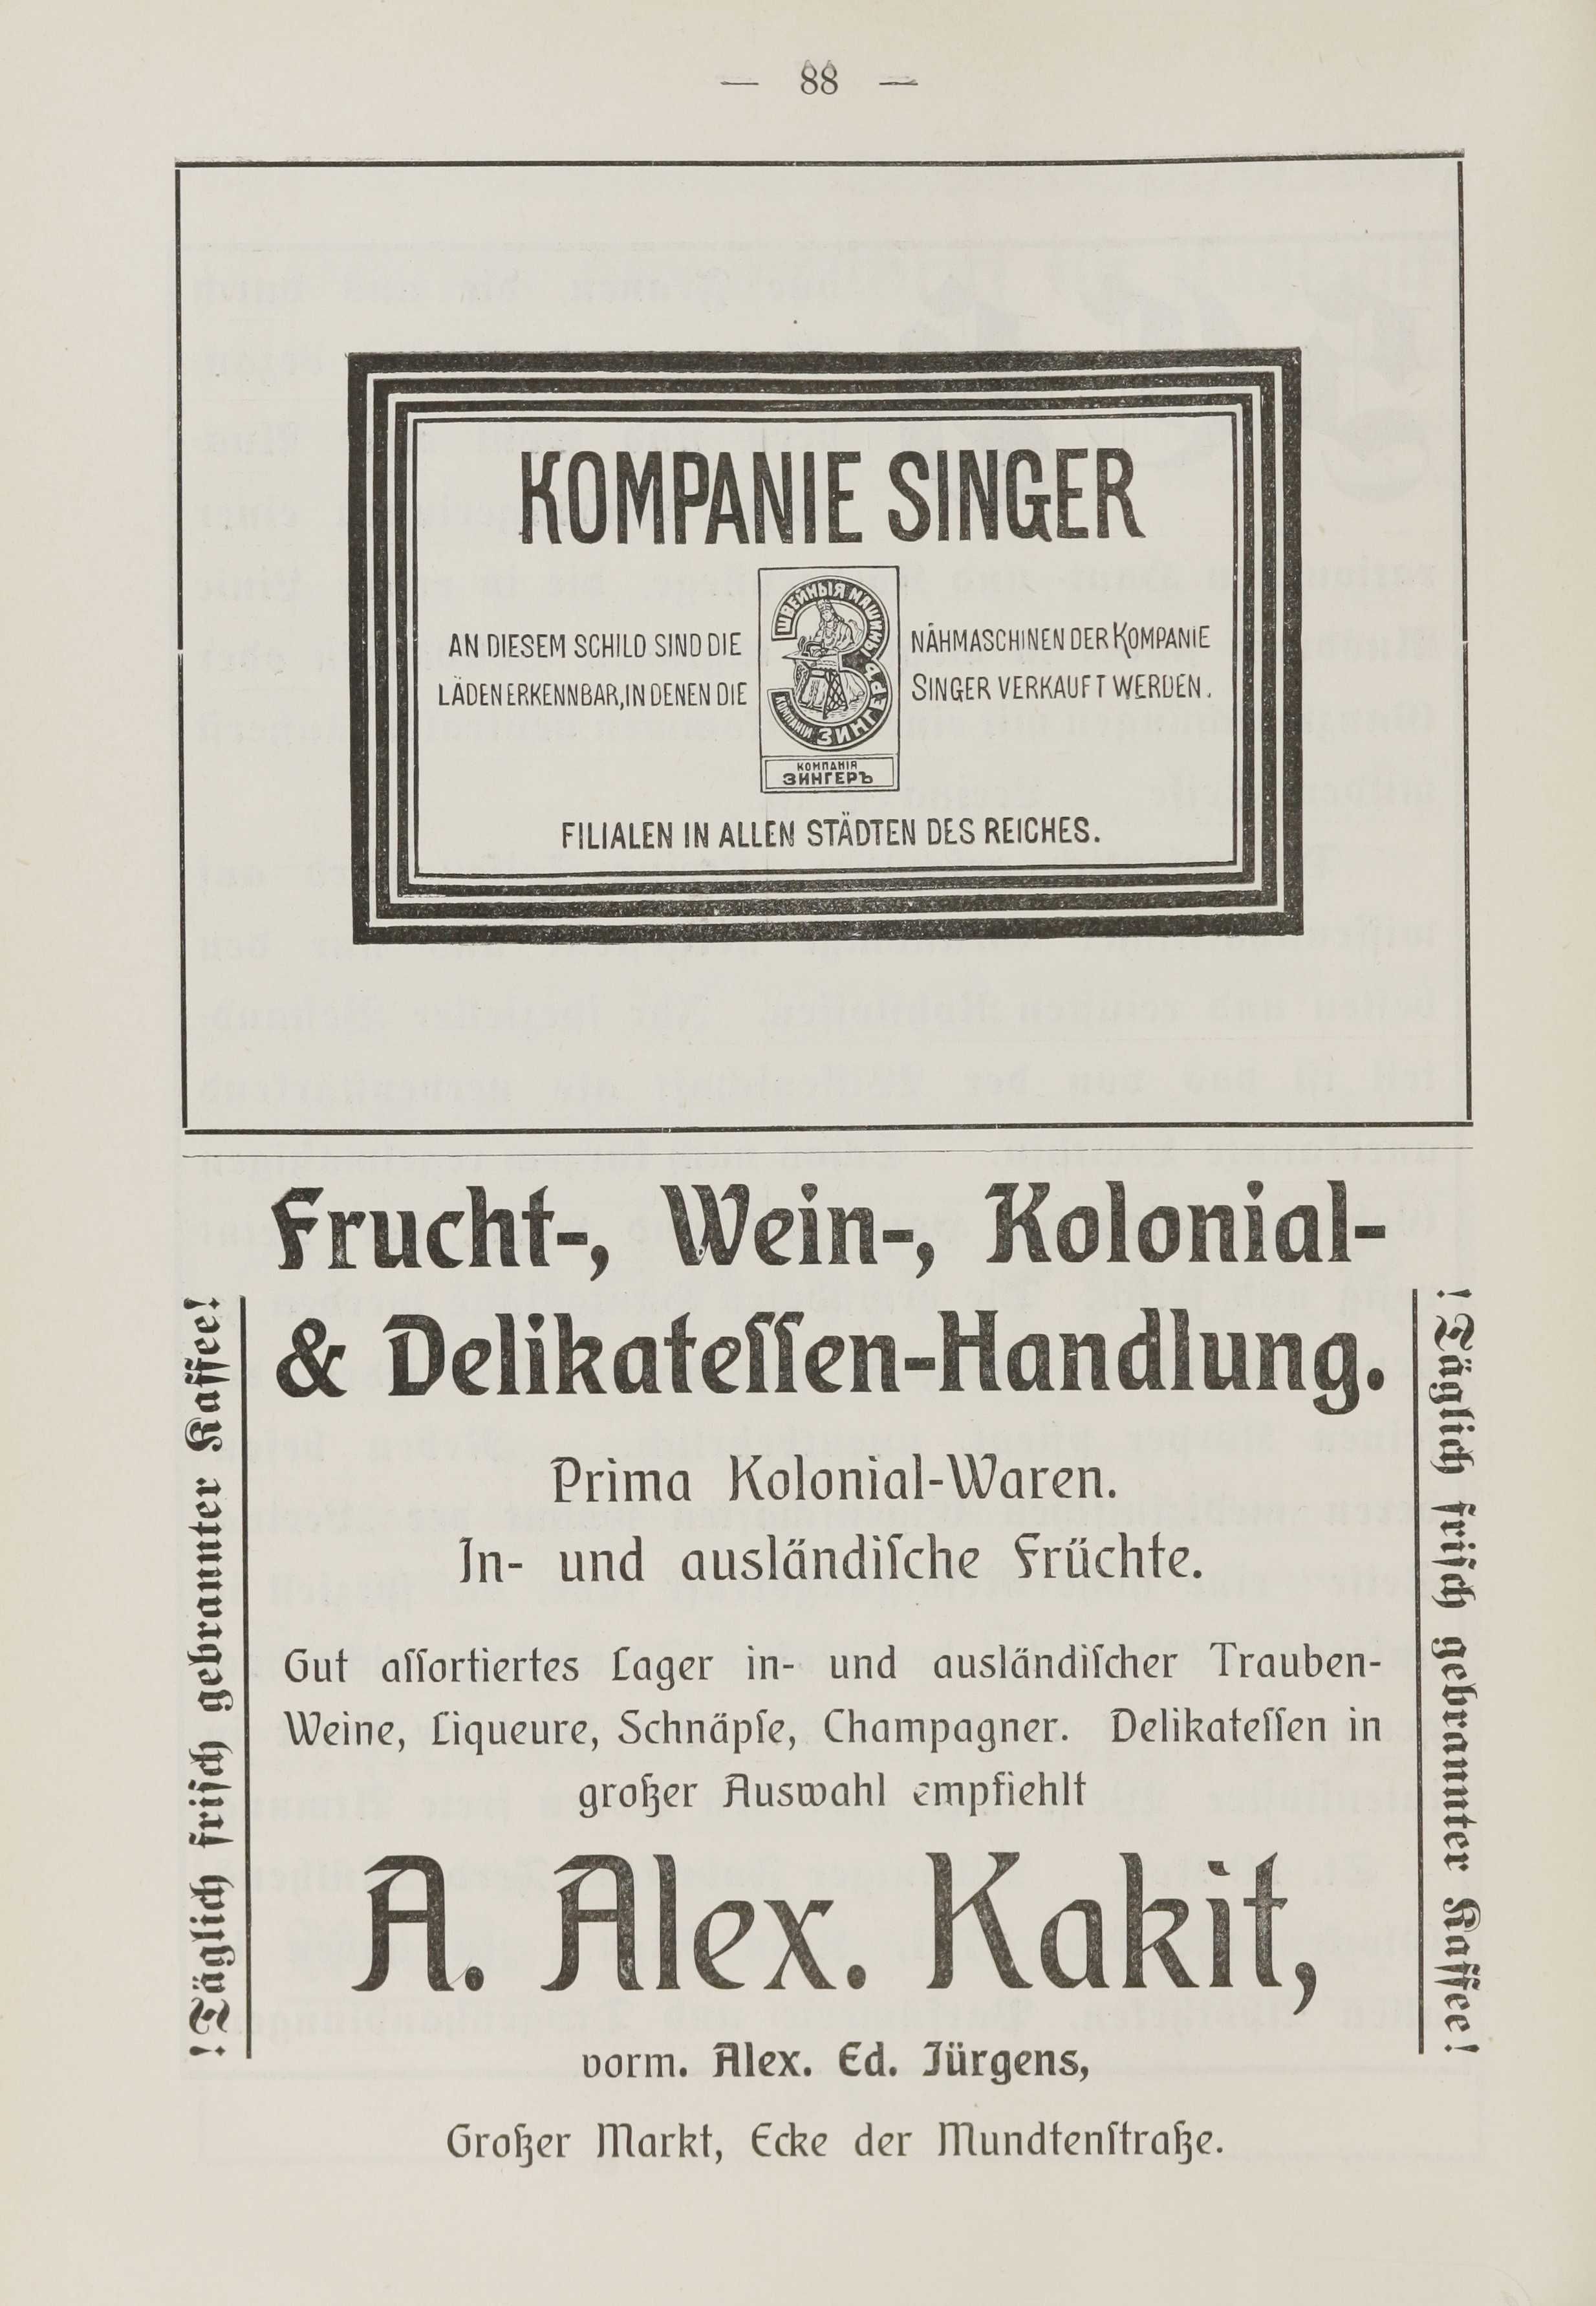 Deutsche Monatsschrift für Russland [1] (1912) | 95. (88) Main body of text